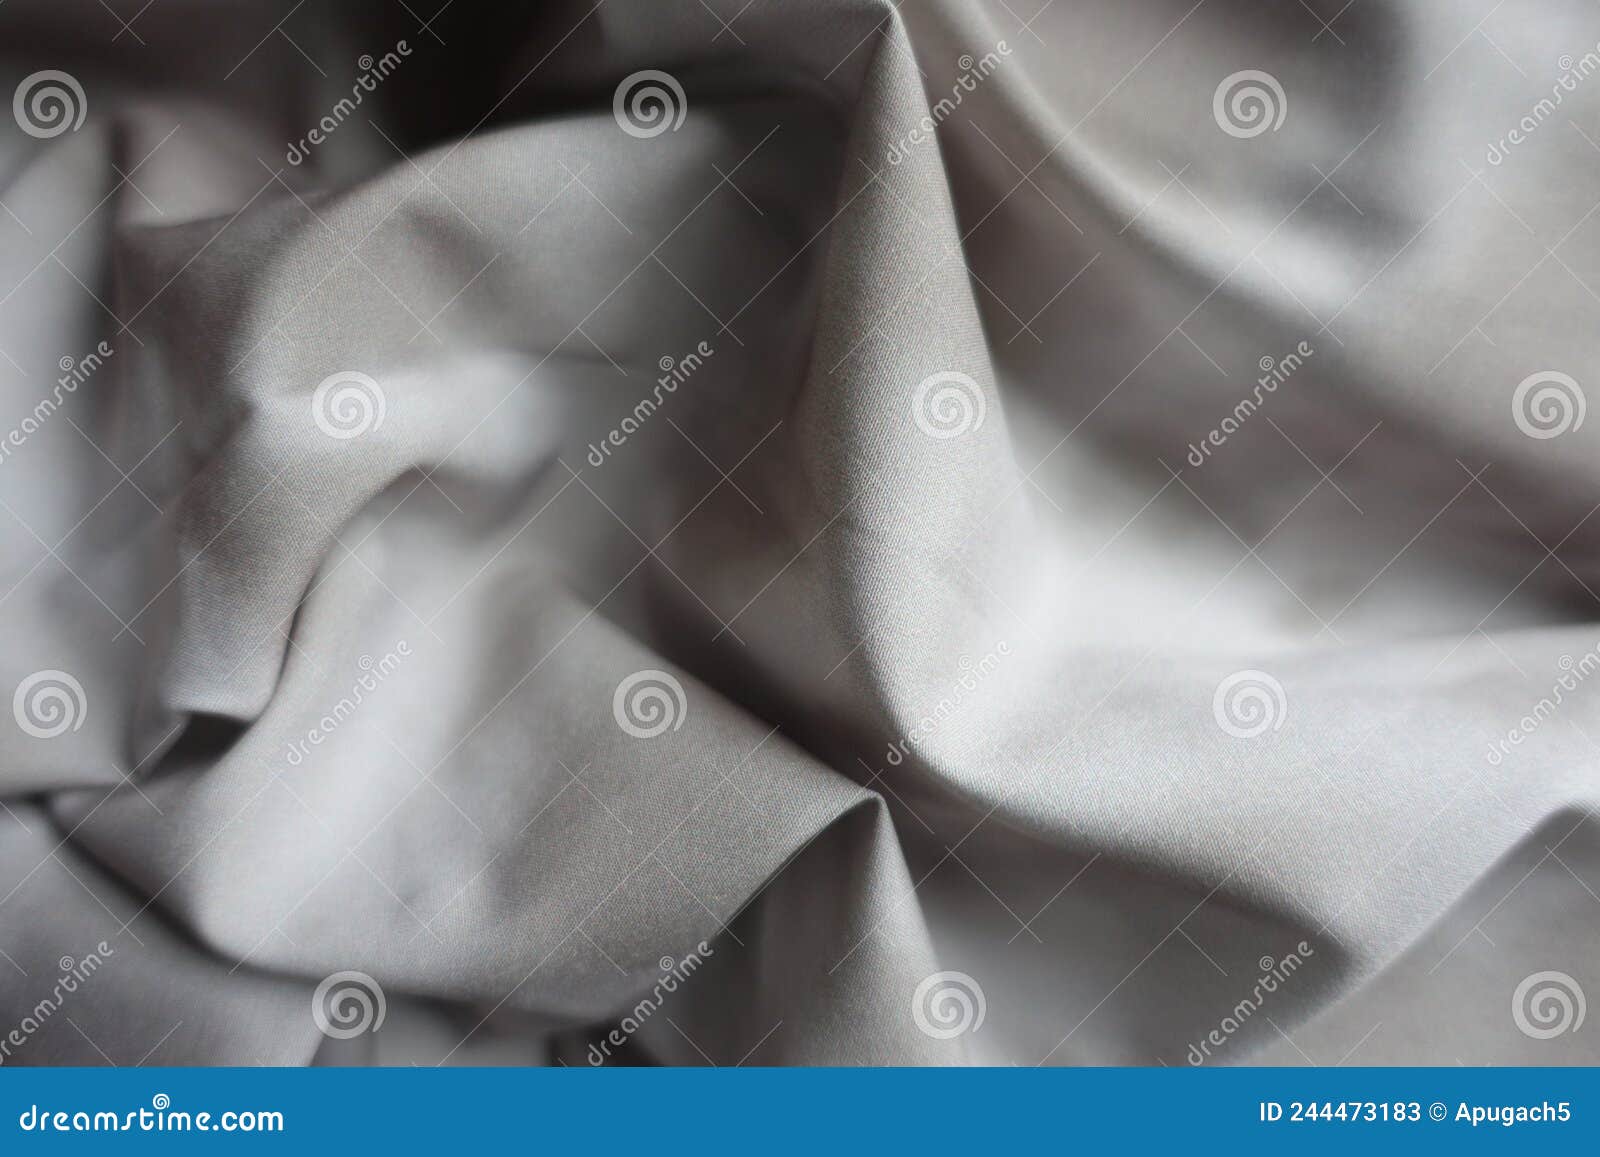 Tissu De Viscose Et Polyester Drapé Avec Motif De Carrosserie Dans Les Tons  Gris Image stock - Image du ondulé, matériau: 244473183